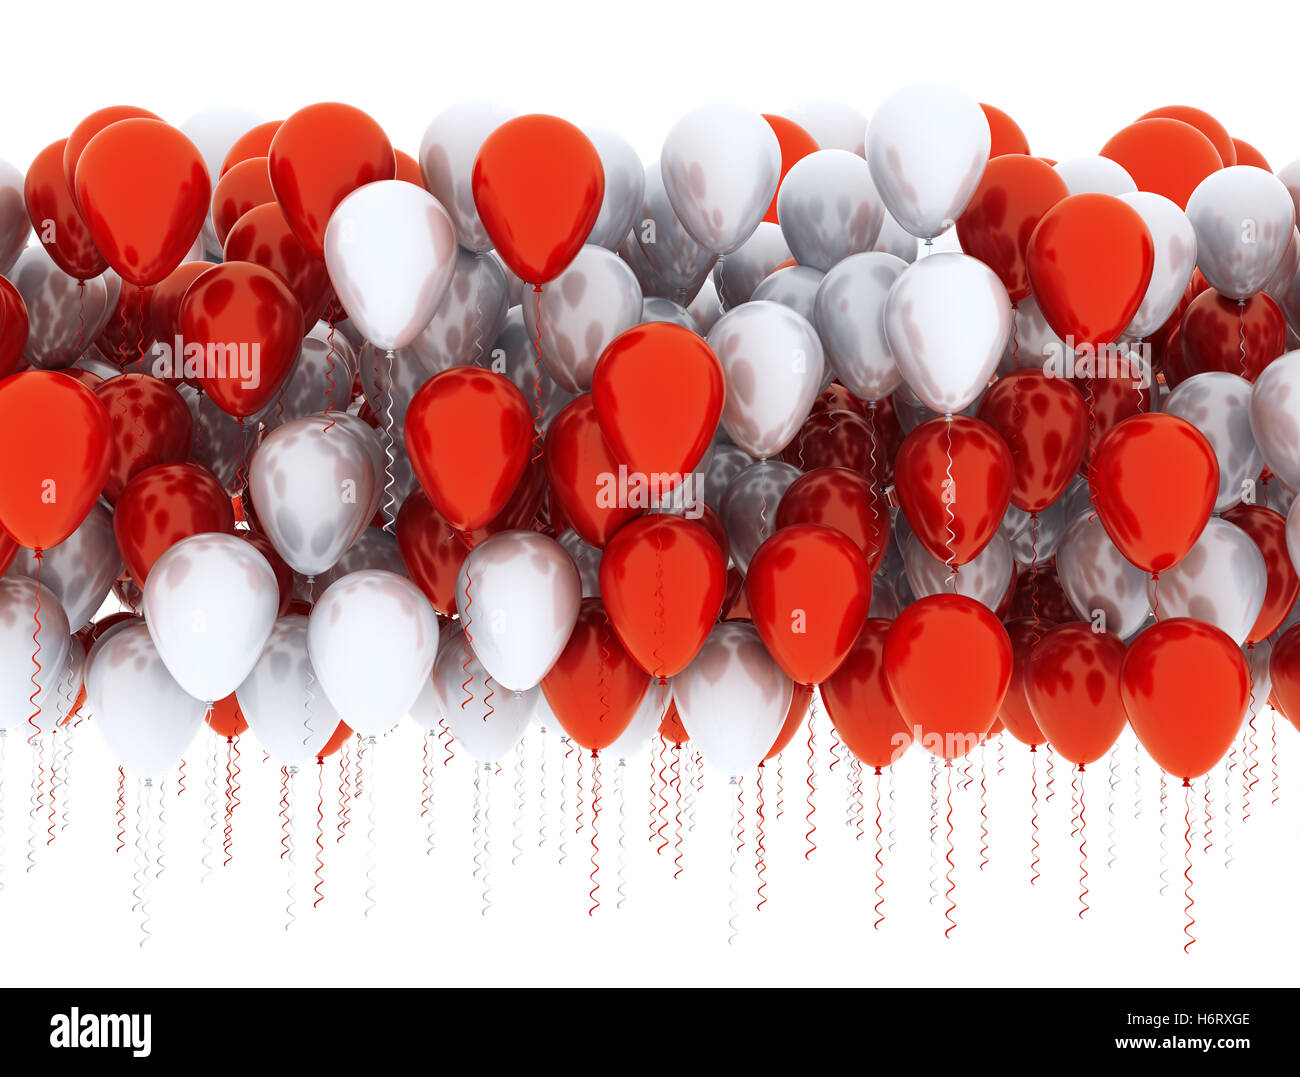 Ballon Werbung Jubiläum Ballons Ballon Hintergrund Hintergrund rote Anzeige  schön groß beauteously schöne Objekte Stockfotografie - Alamy